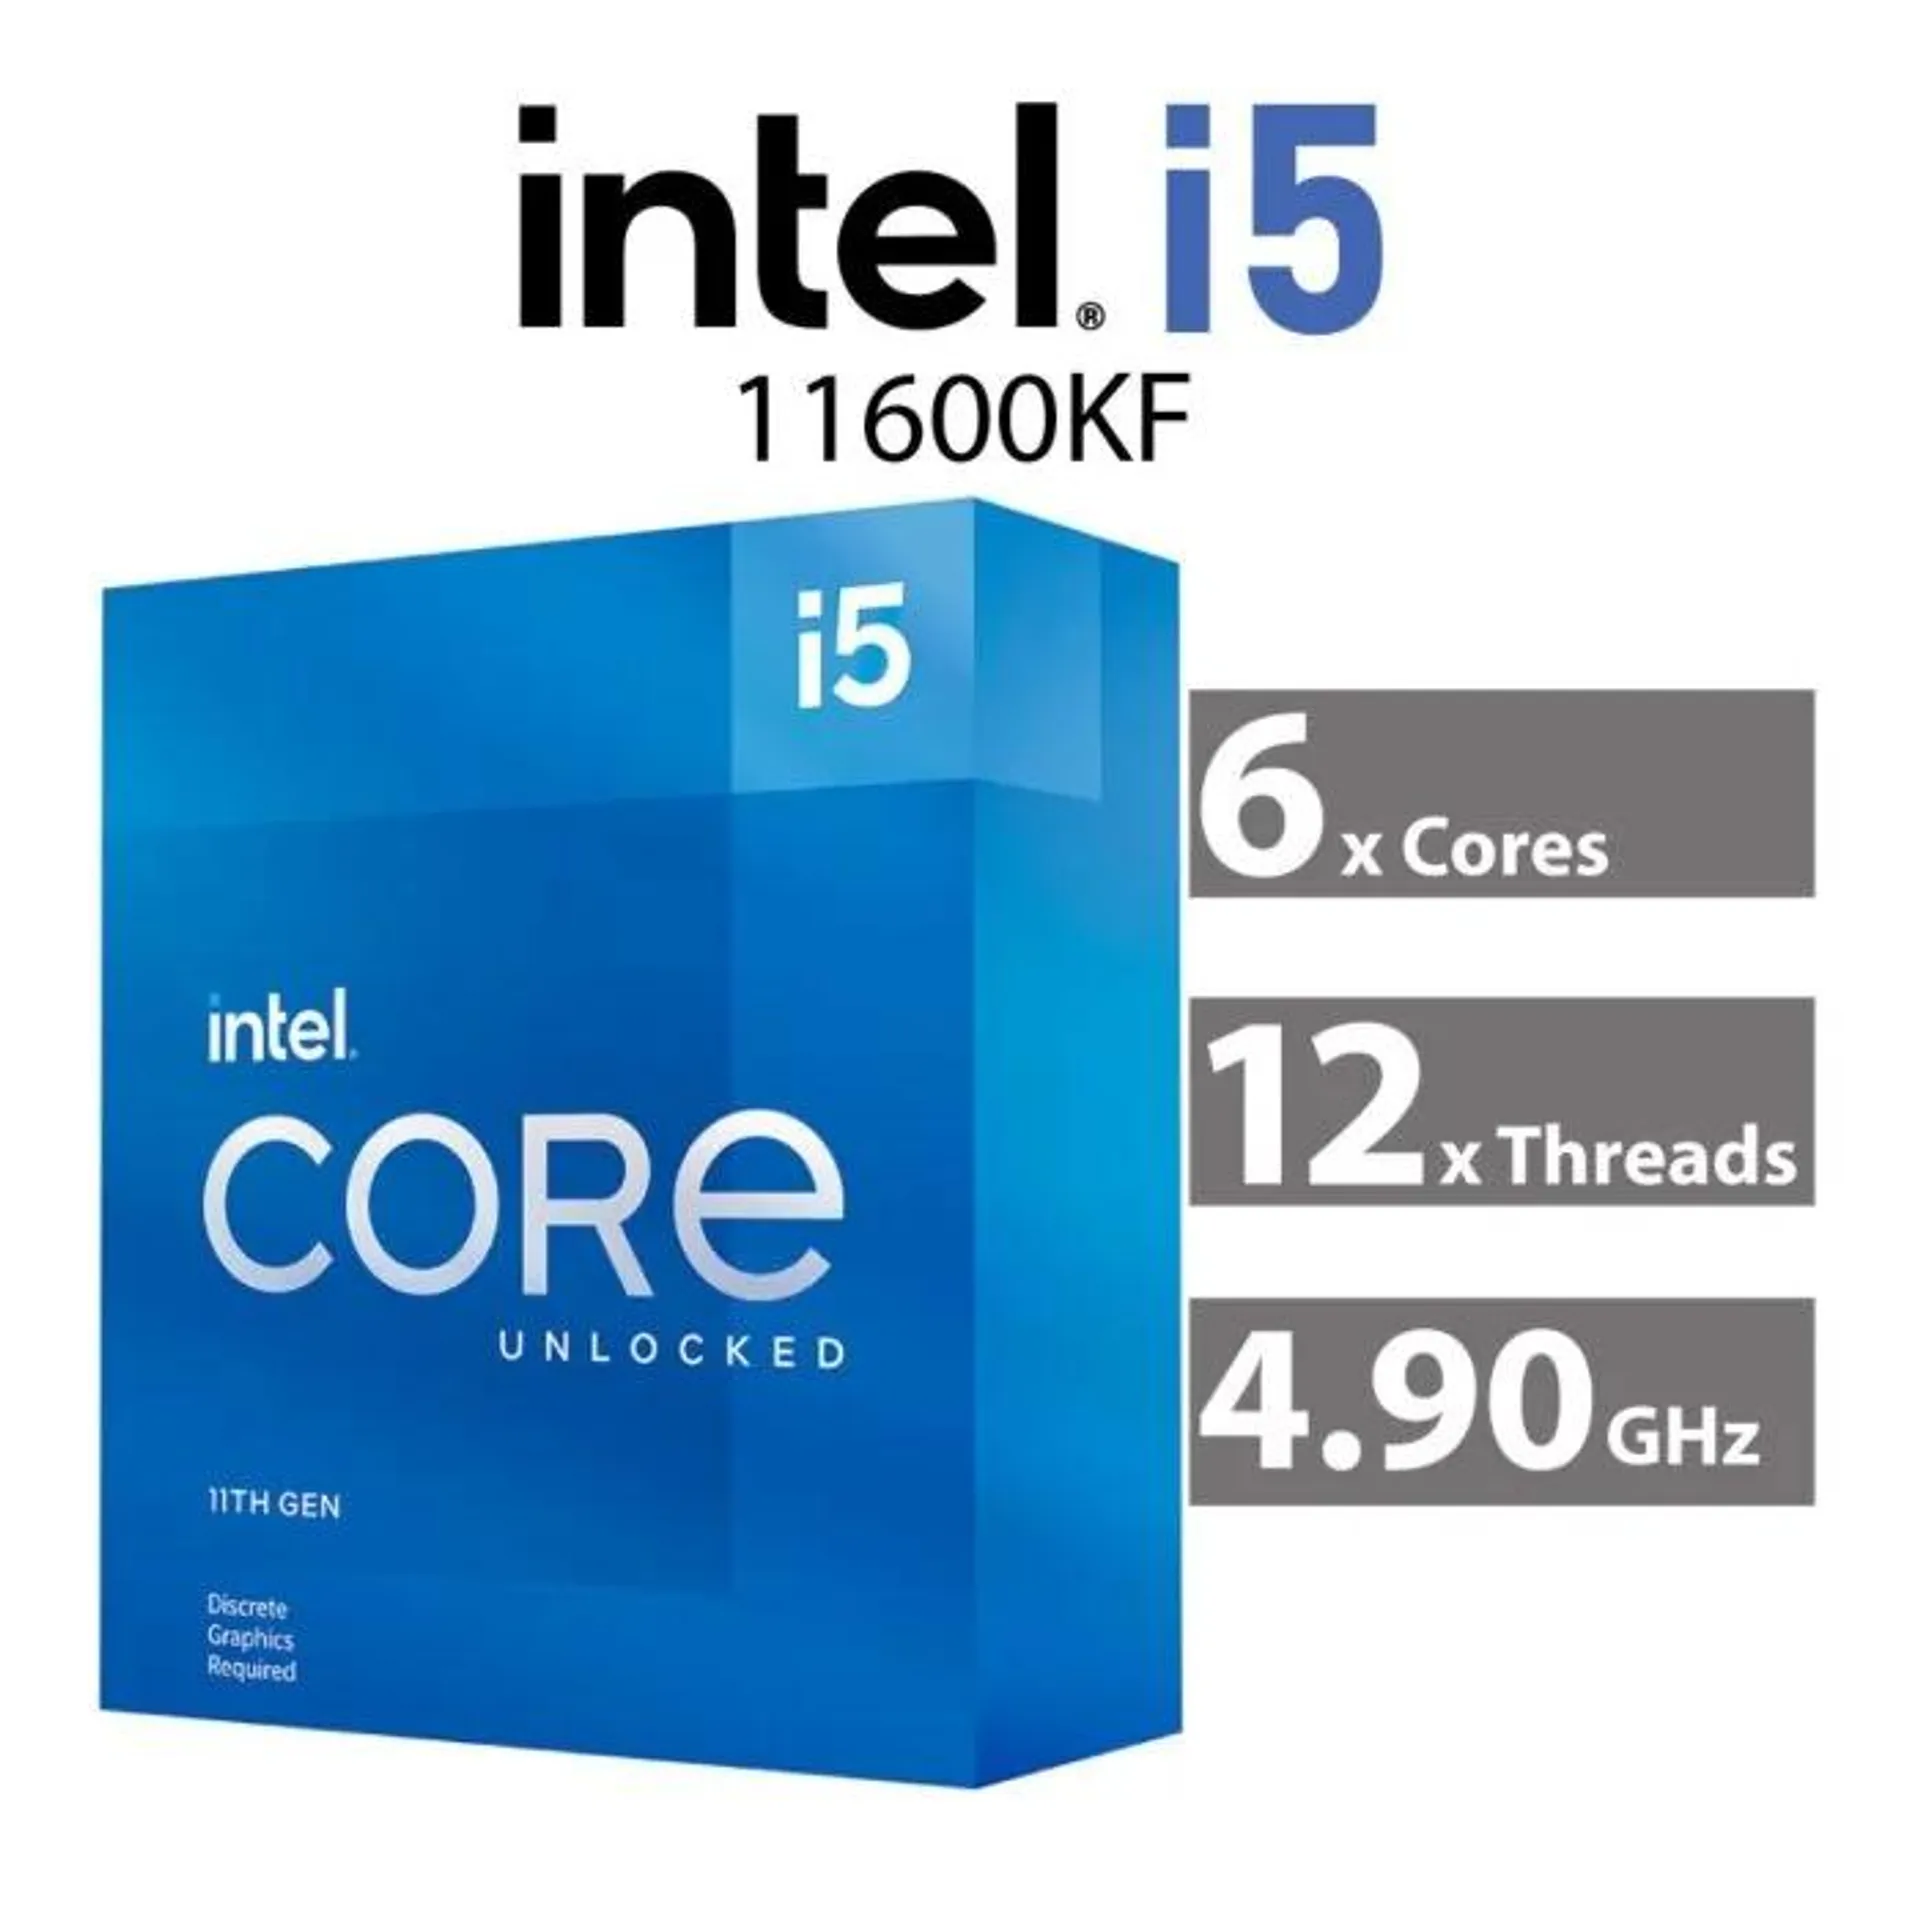 Intel Core i5-11600KF Rocket Lake 6-Core 3.90GHz LGA1200 125W BX8070811600KF Desktop Processor